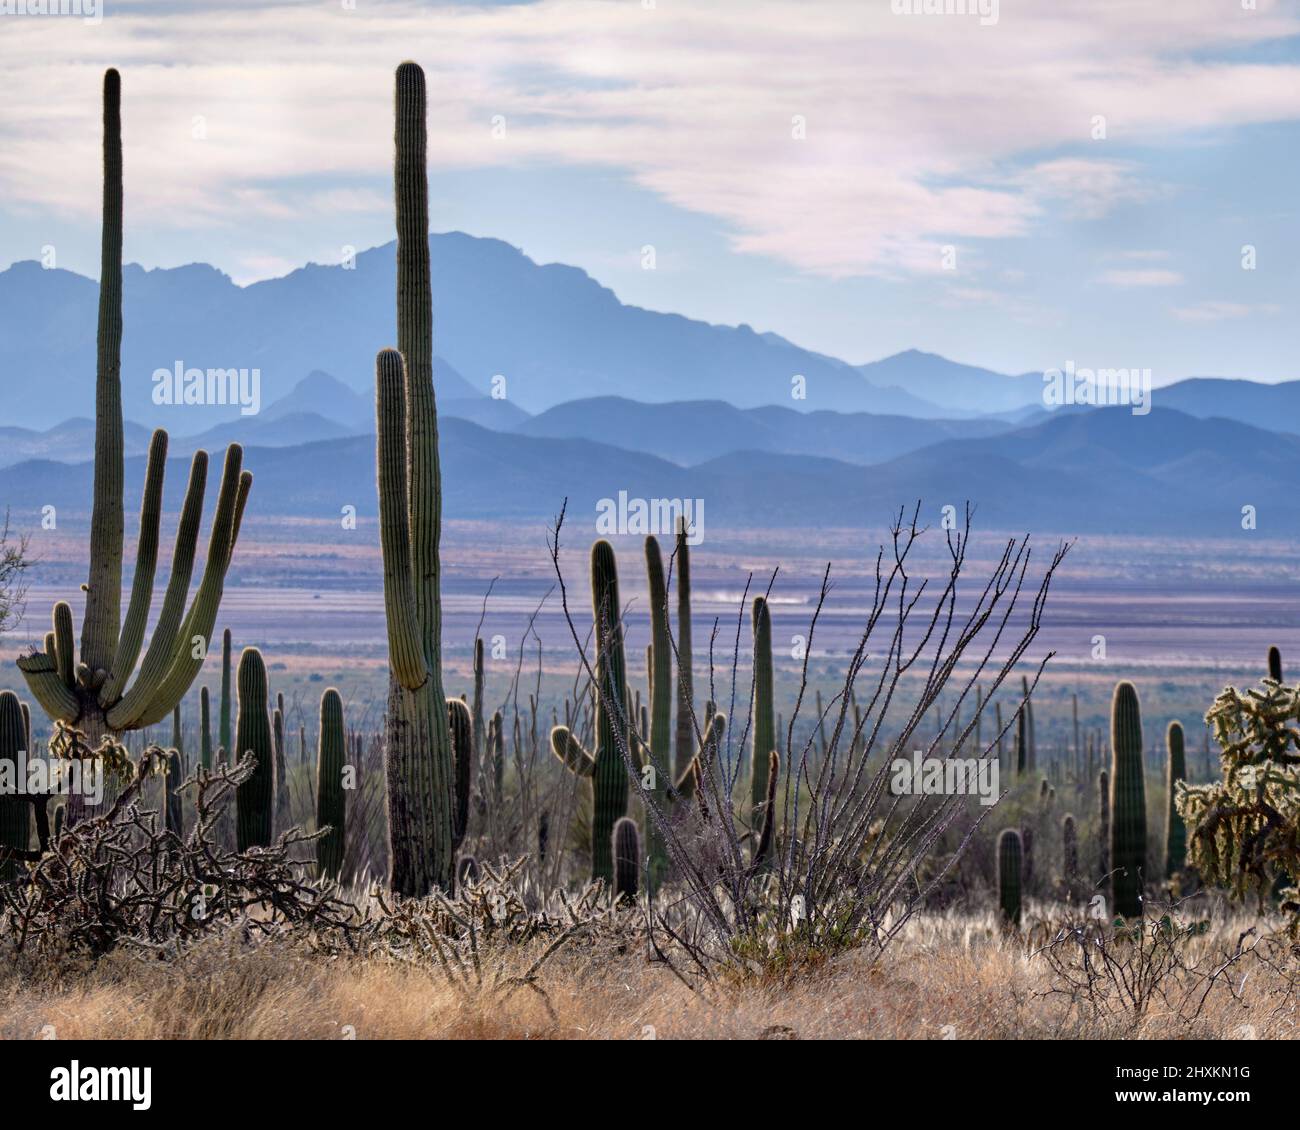 Cactus saguaro altos en primer plano contra el fondo de las montañas en tonos de azul. McCain Loop Road, Tucson Mountain Park, AZ Foto de stock